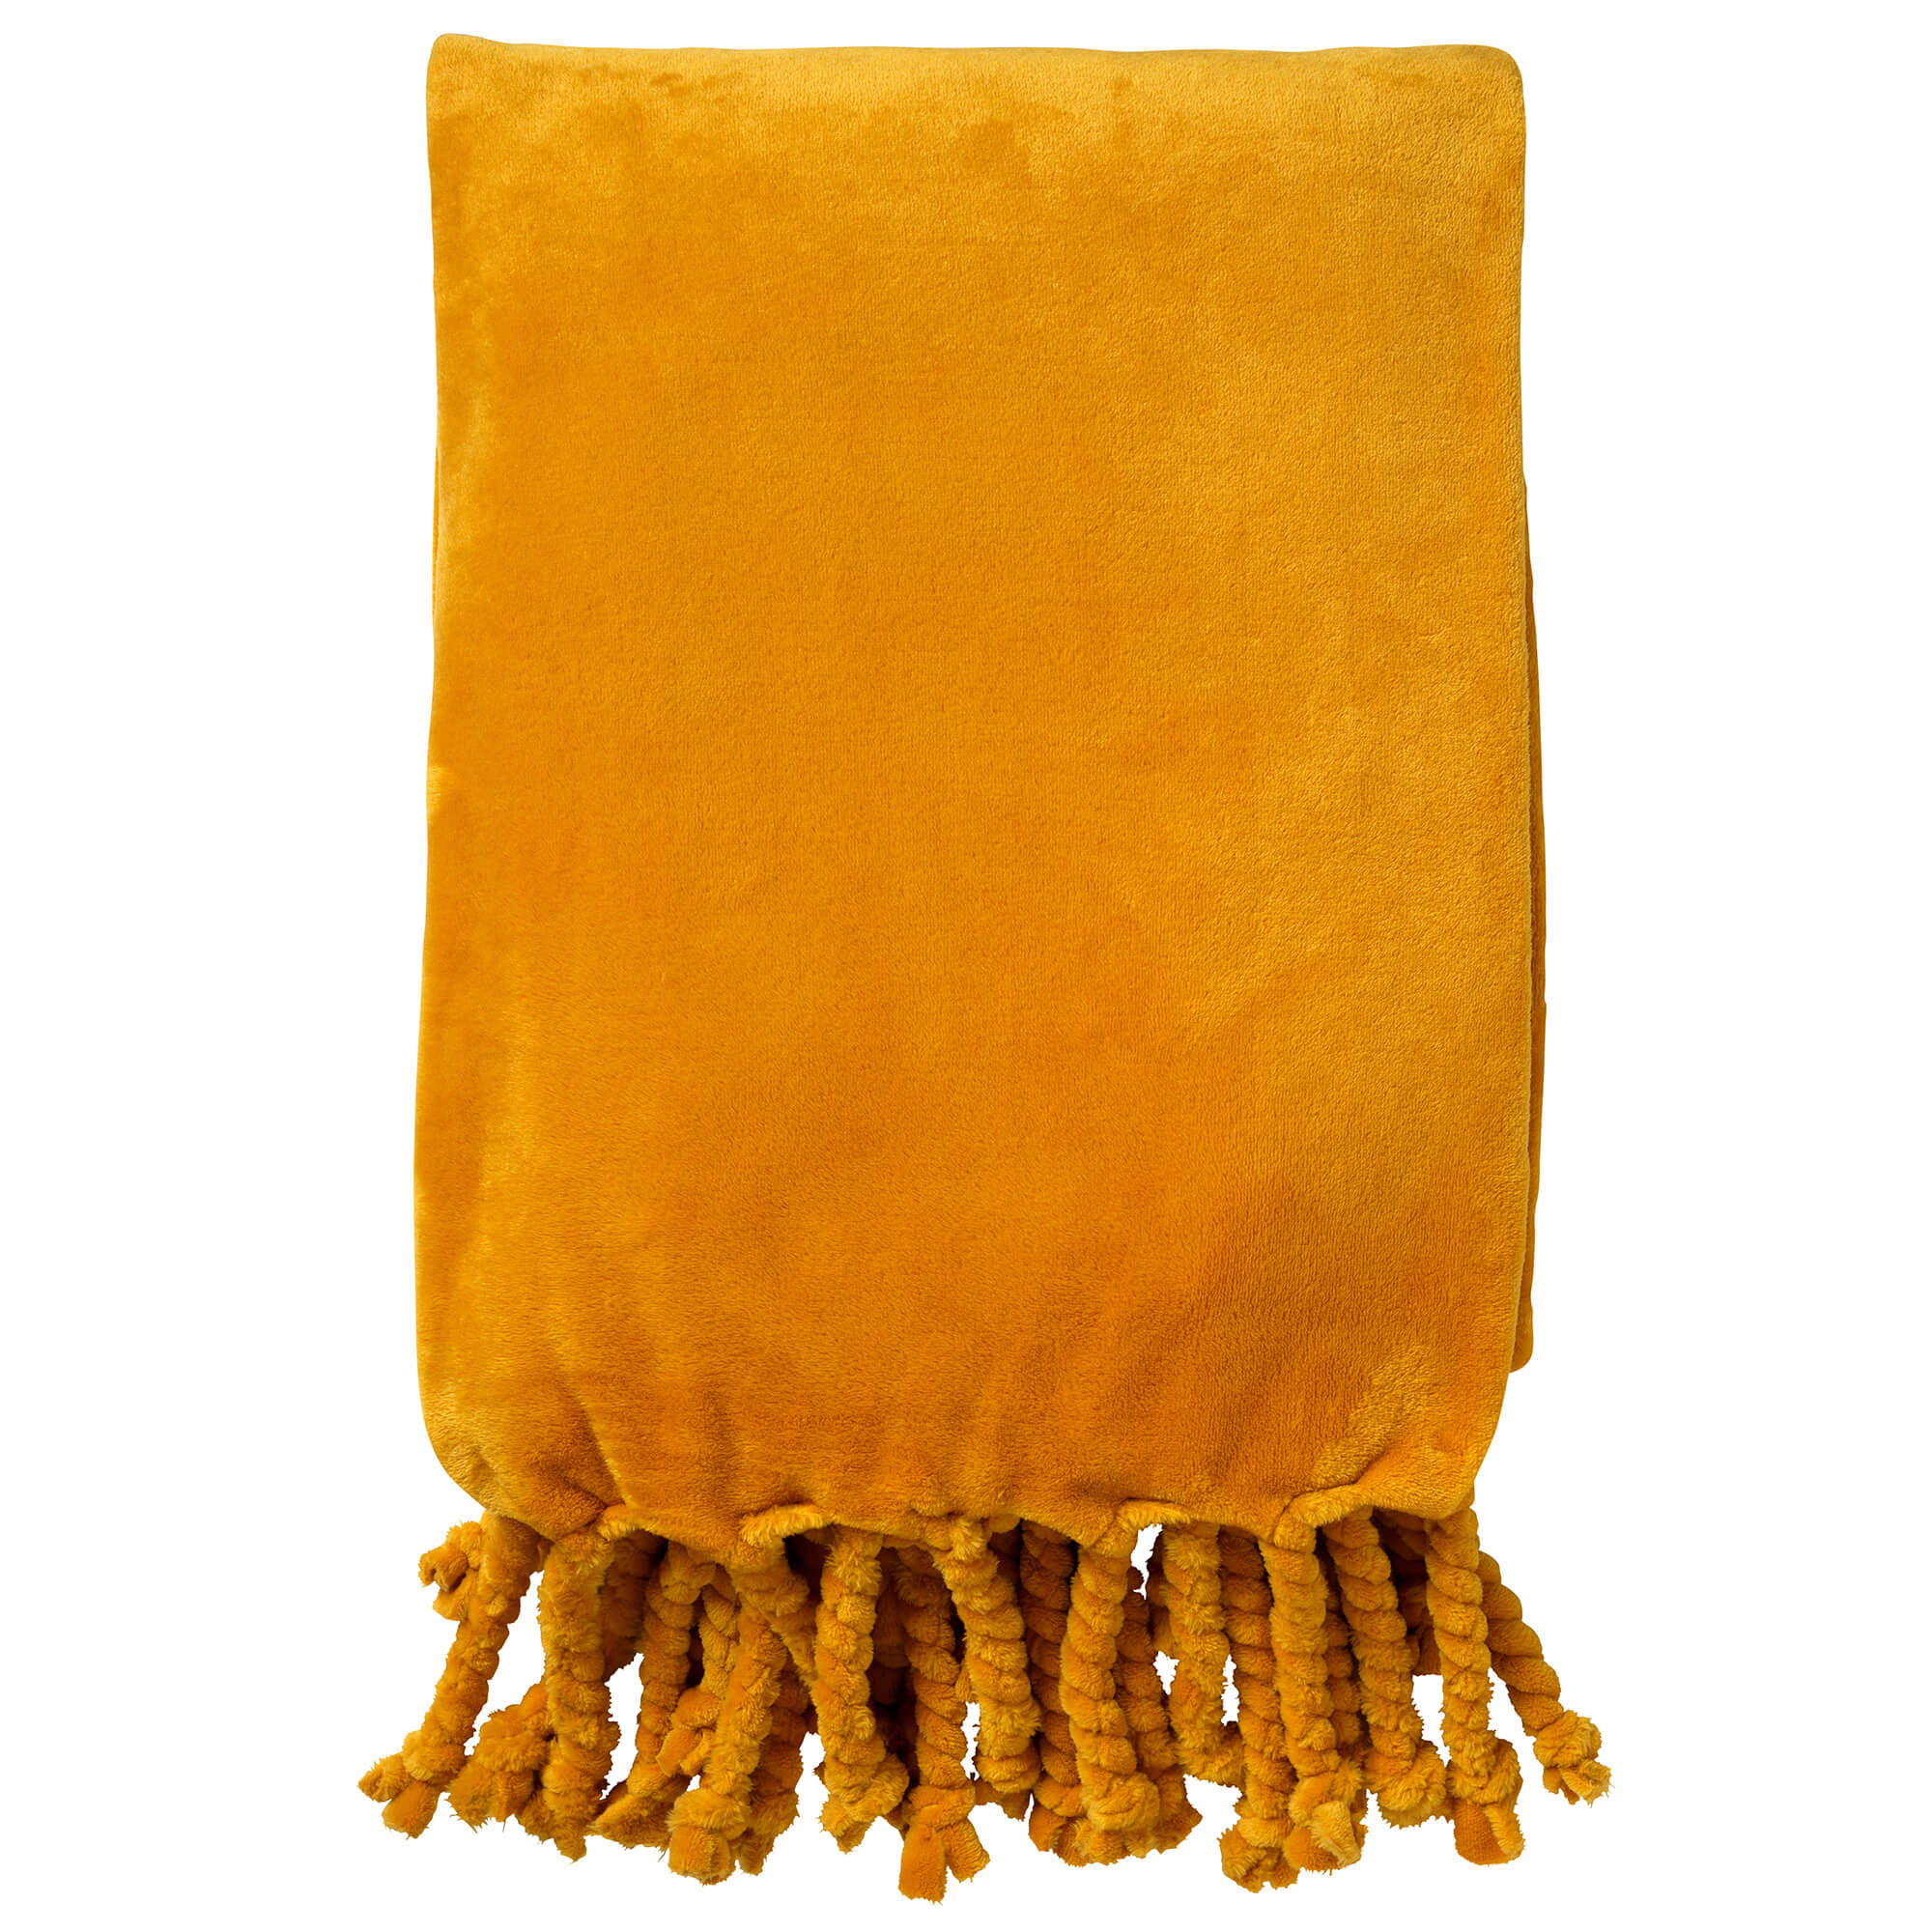 FLORIJN - Plaid 150x200 cm - grote fleece plaid met flosjes - Golden Glow - geel